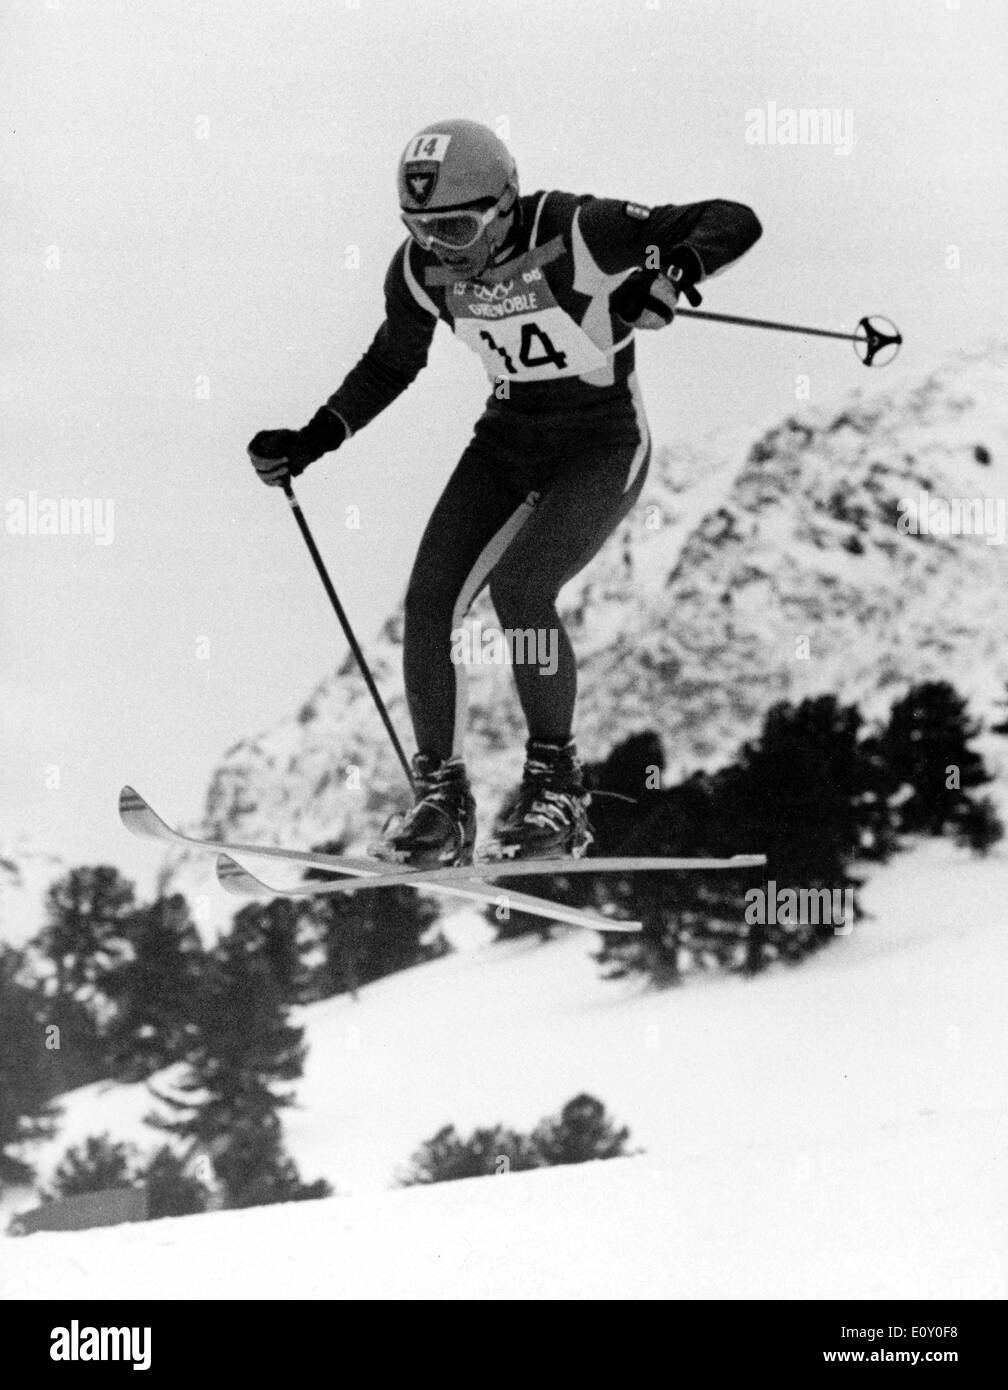 Feb 06, 1968; Grenoble, Francia; file (foto) Il sciatore francese Jean Claude Killy vincendo la medaglia d'oro ai Giochi olimpici invernali. Foto Stock